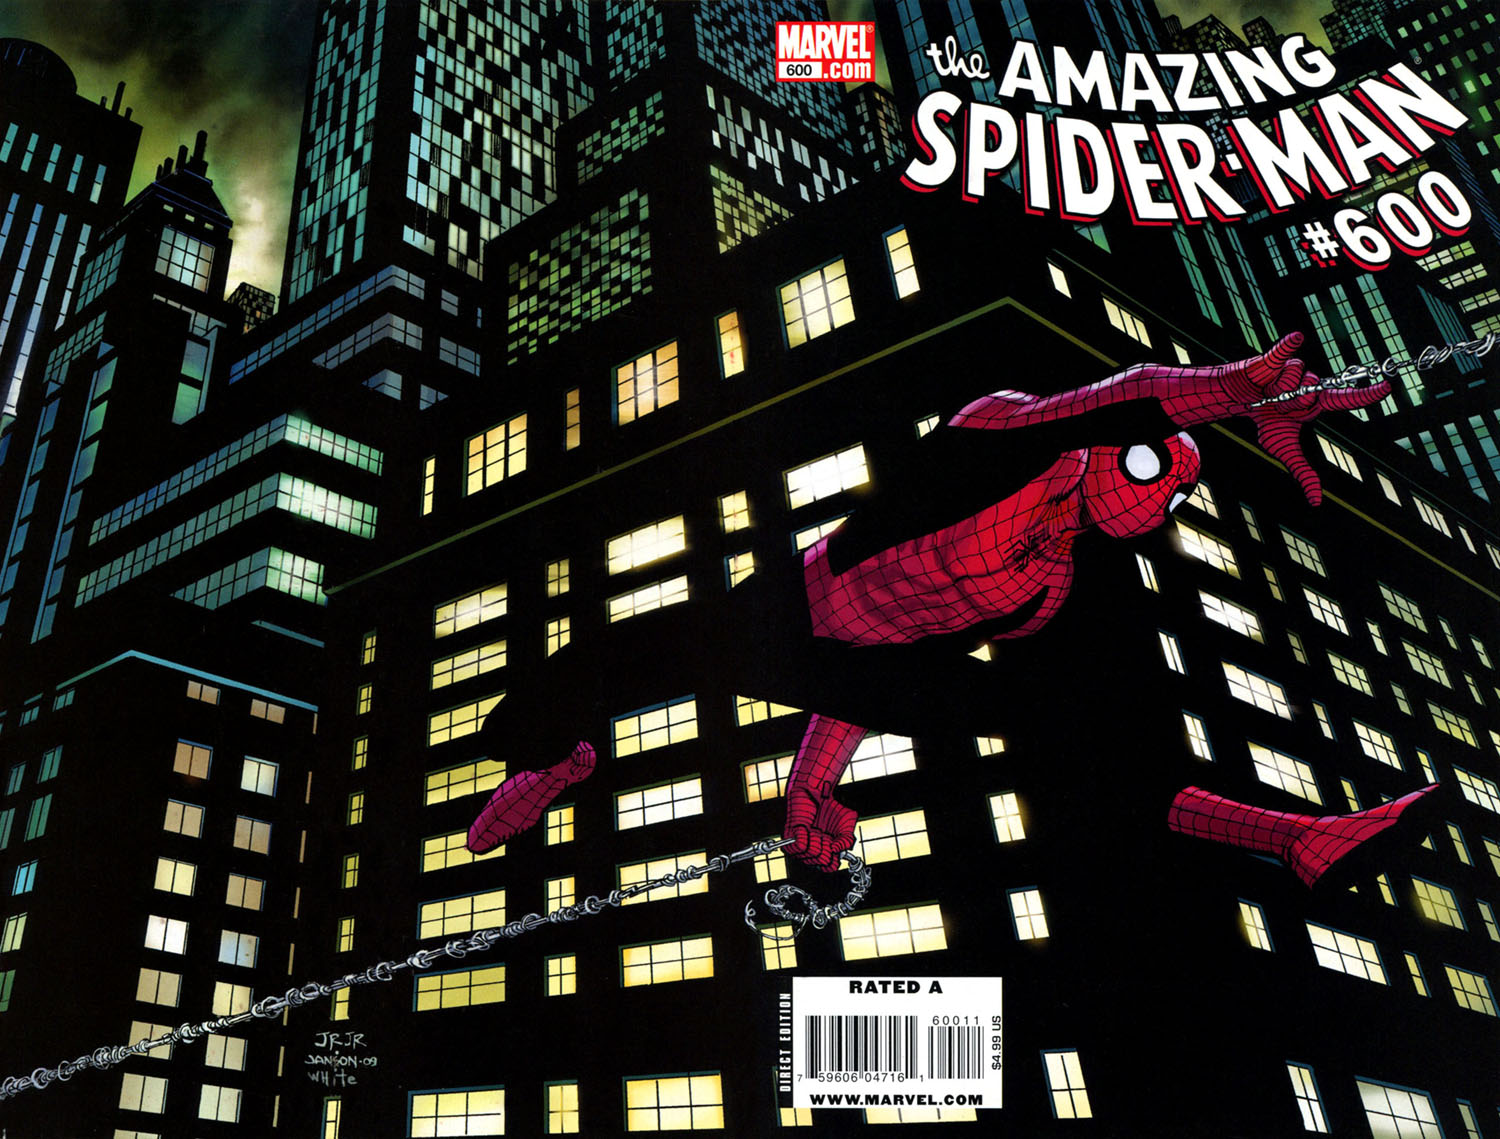 Amazing Spider-Man Vol. 1 #600